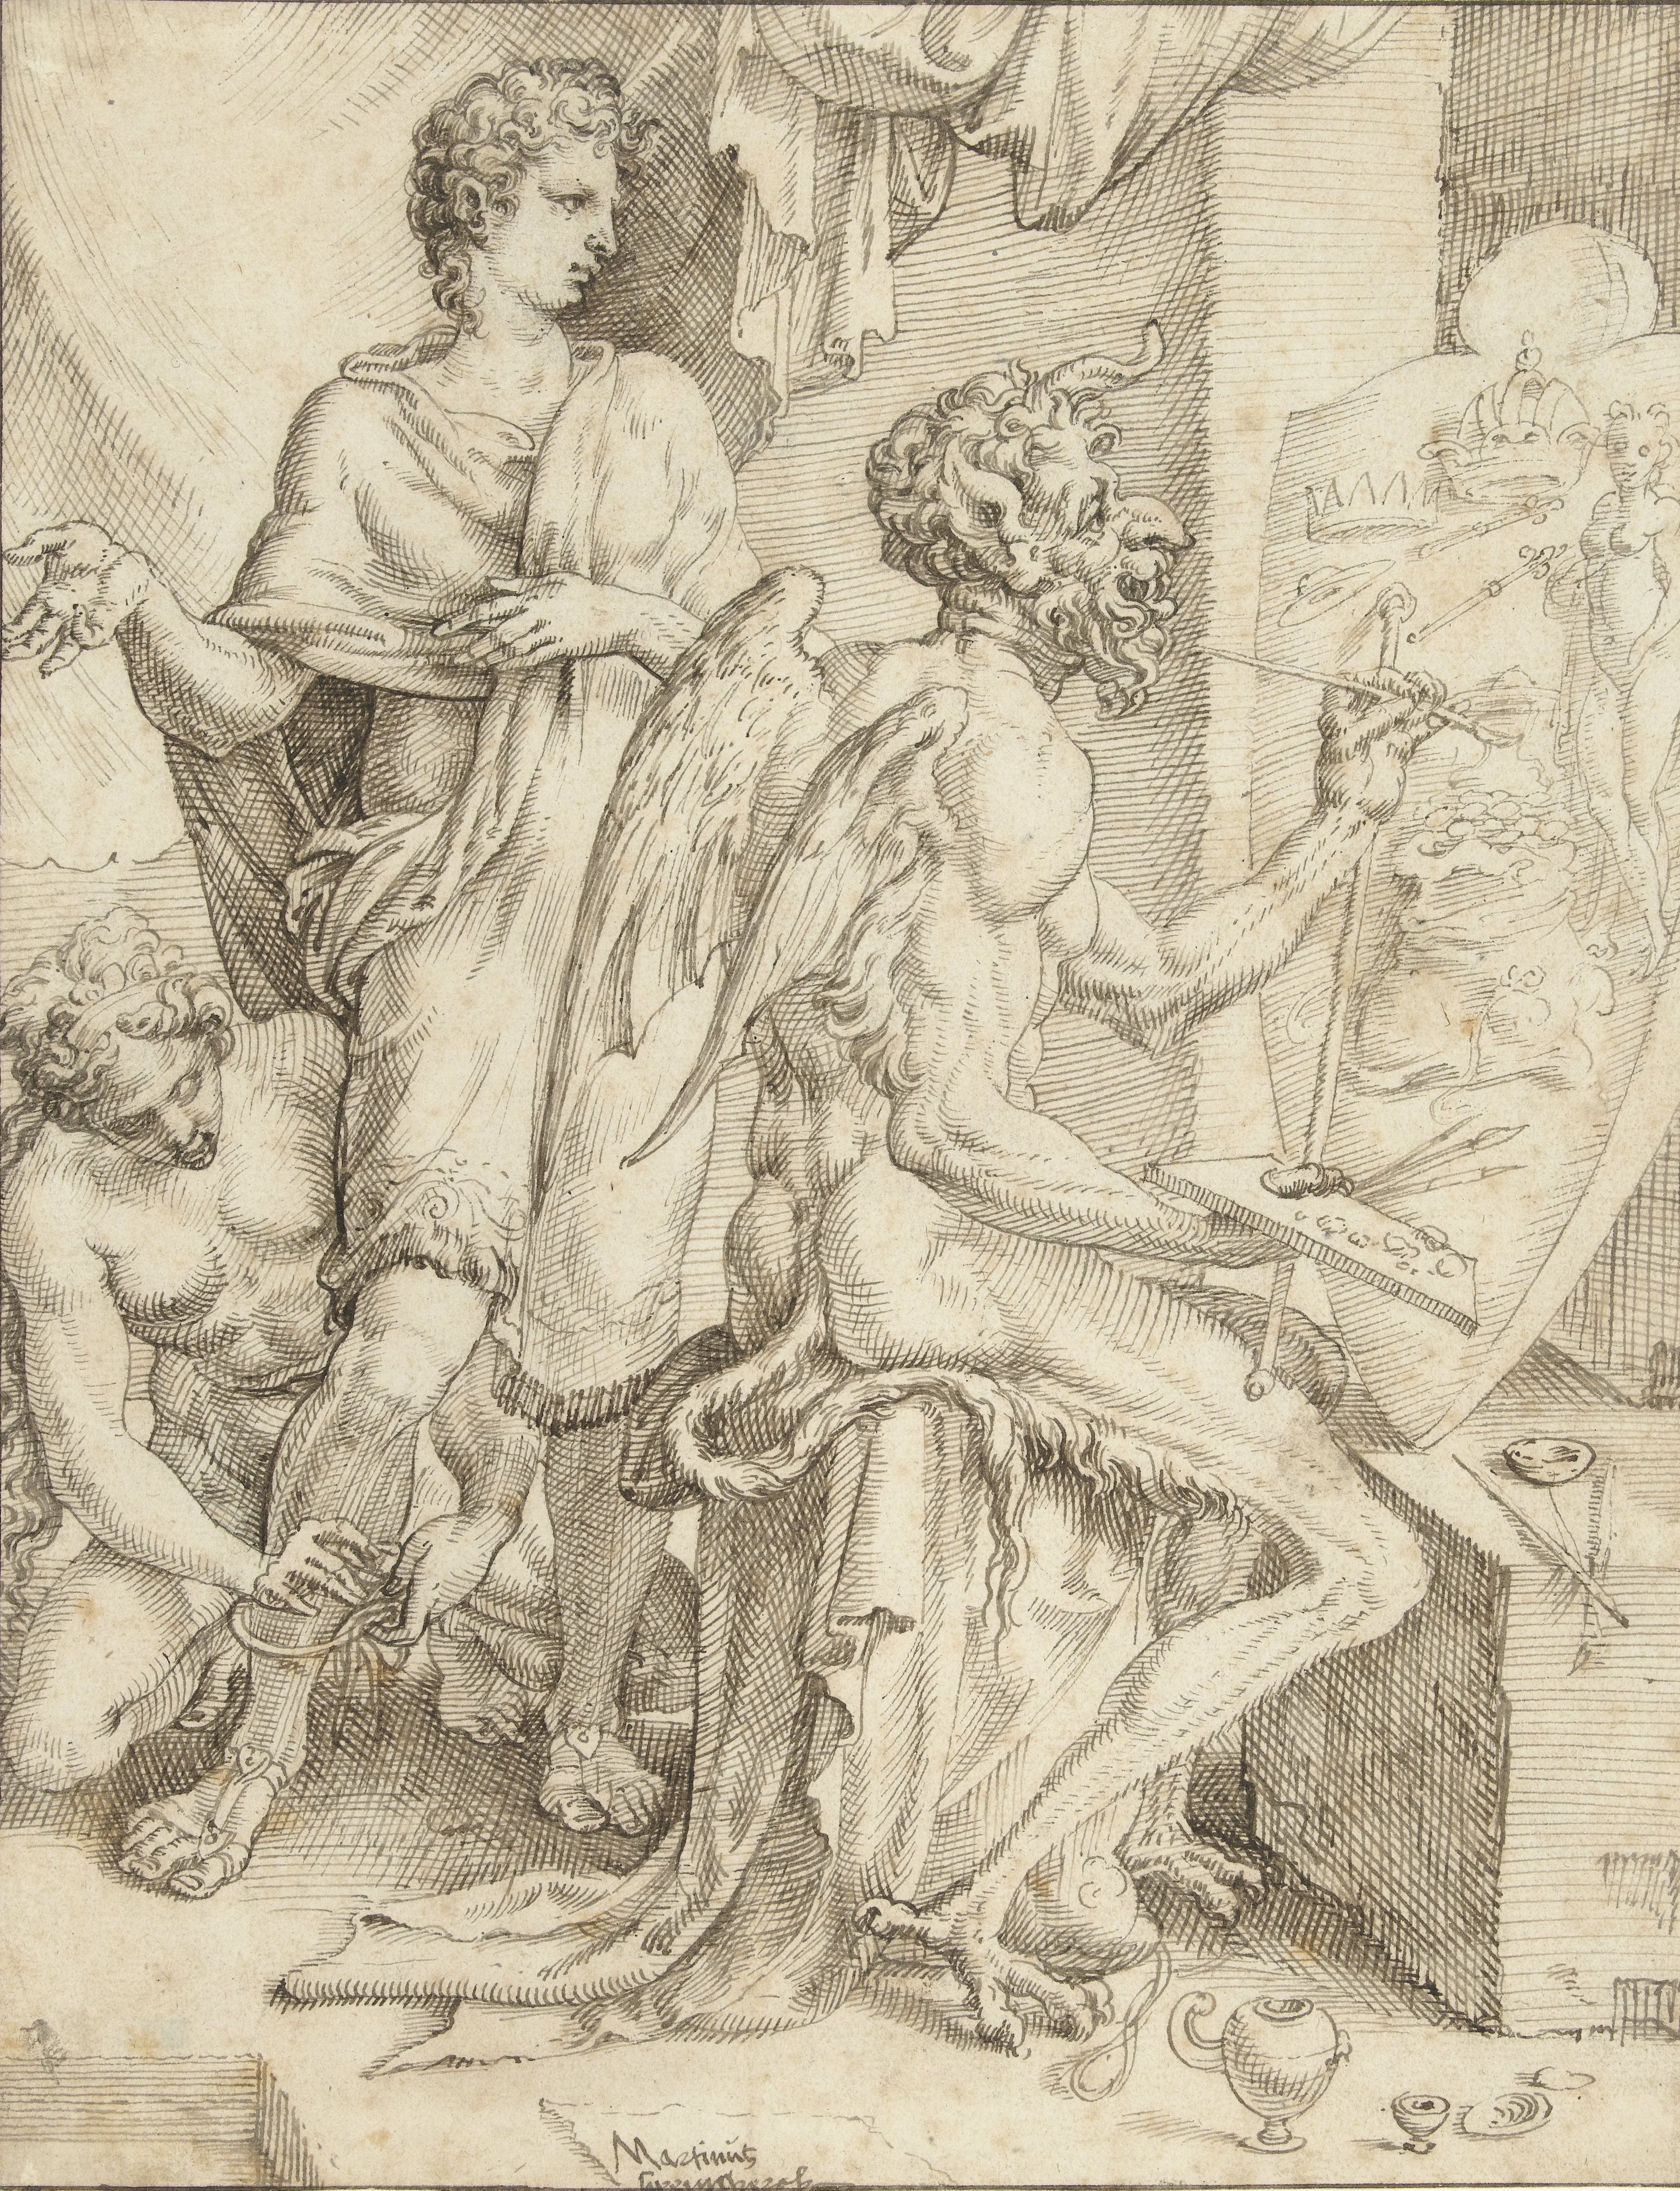 Maarten van Heemskerck, De duivel vervult het menselijk hart met begeerte naar rijkdom, macht en genot, 1550.